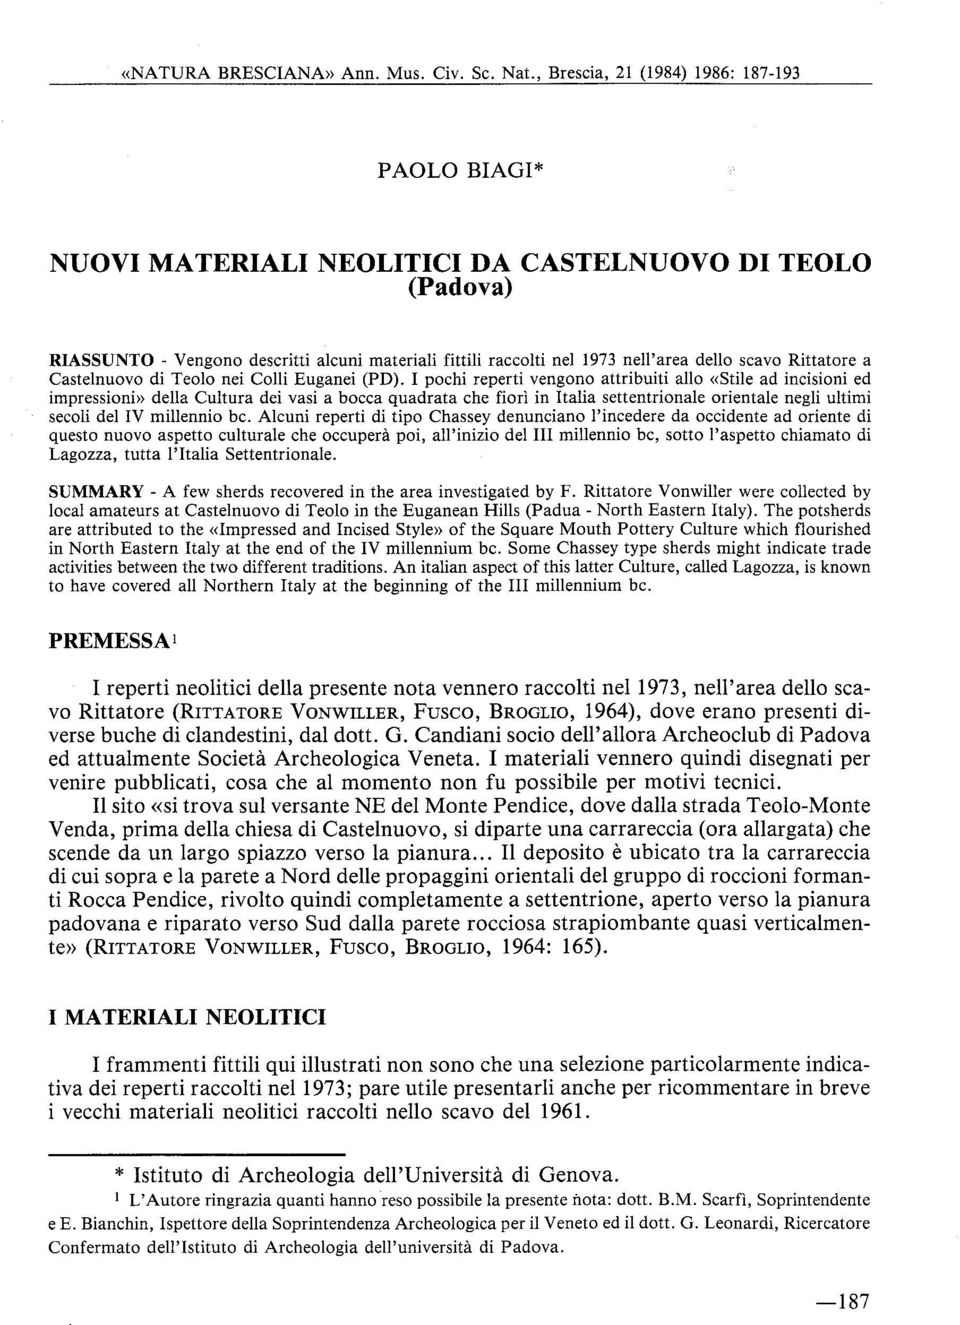 scavo Rittatore a Castelnuovo di Teolo nei Colli Euganei (PD).